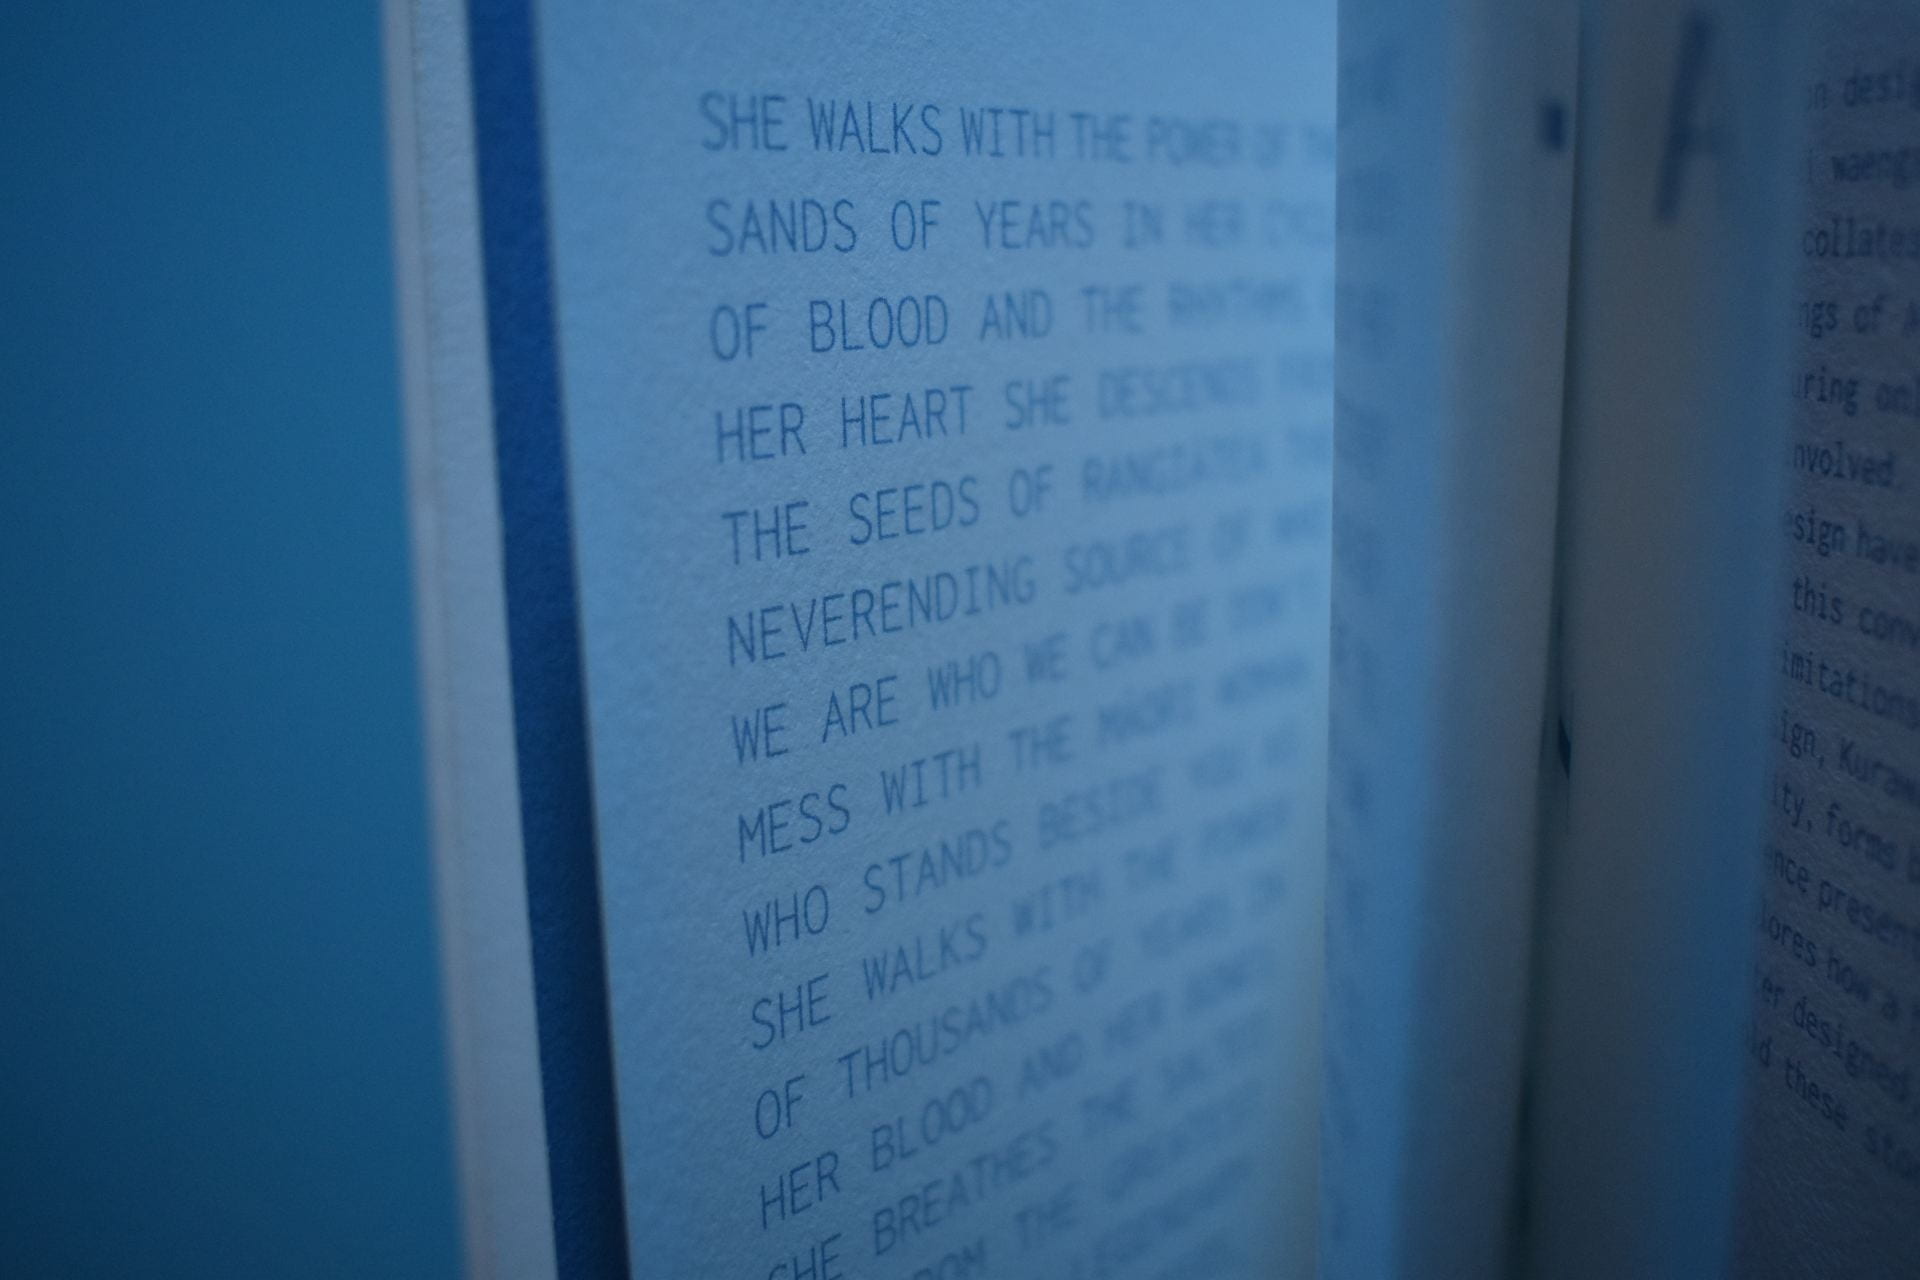 Close-up of text inside a spiral-bound book.